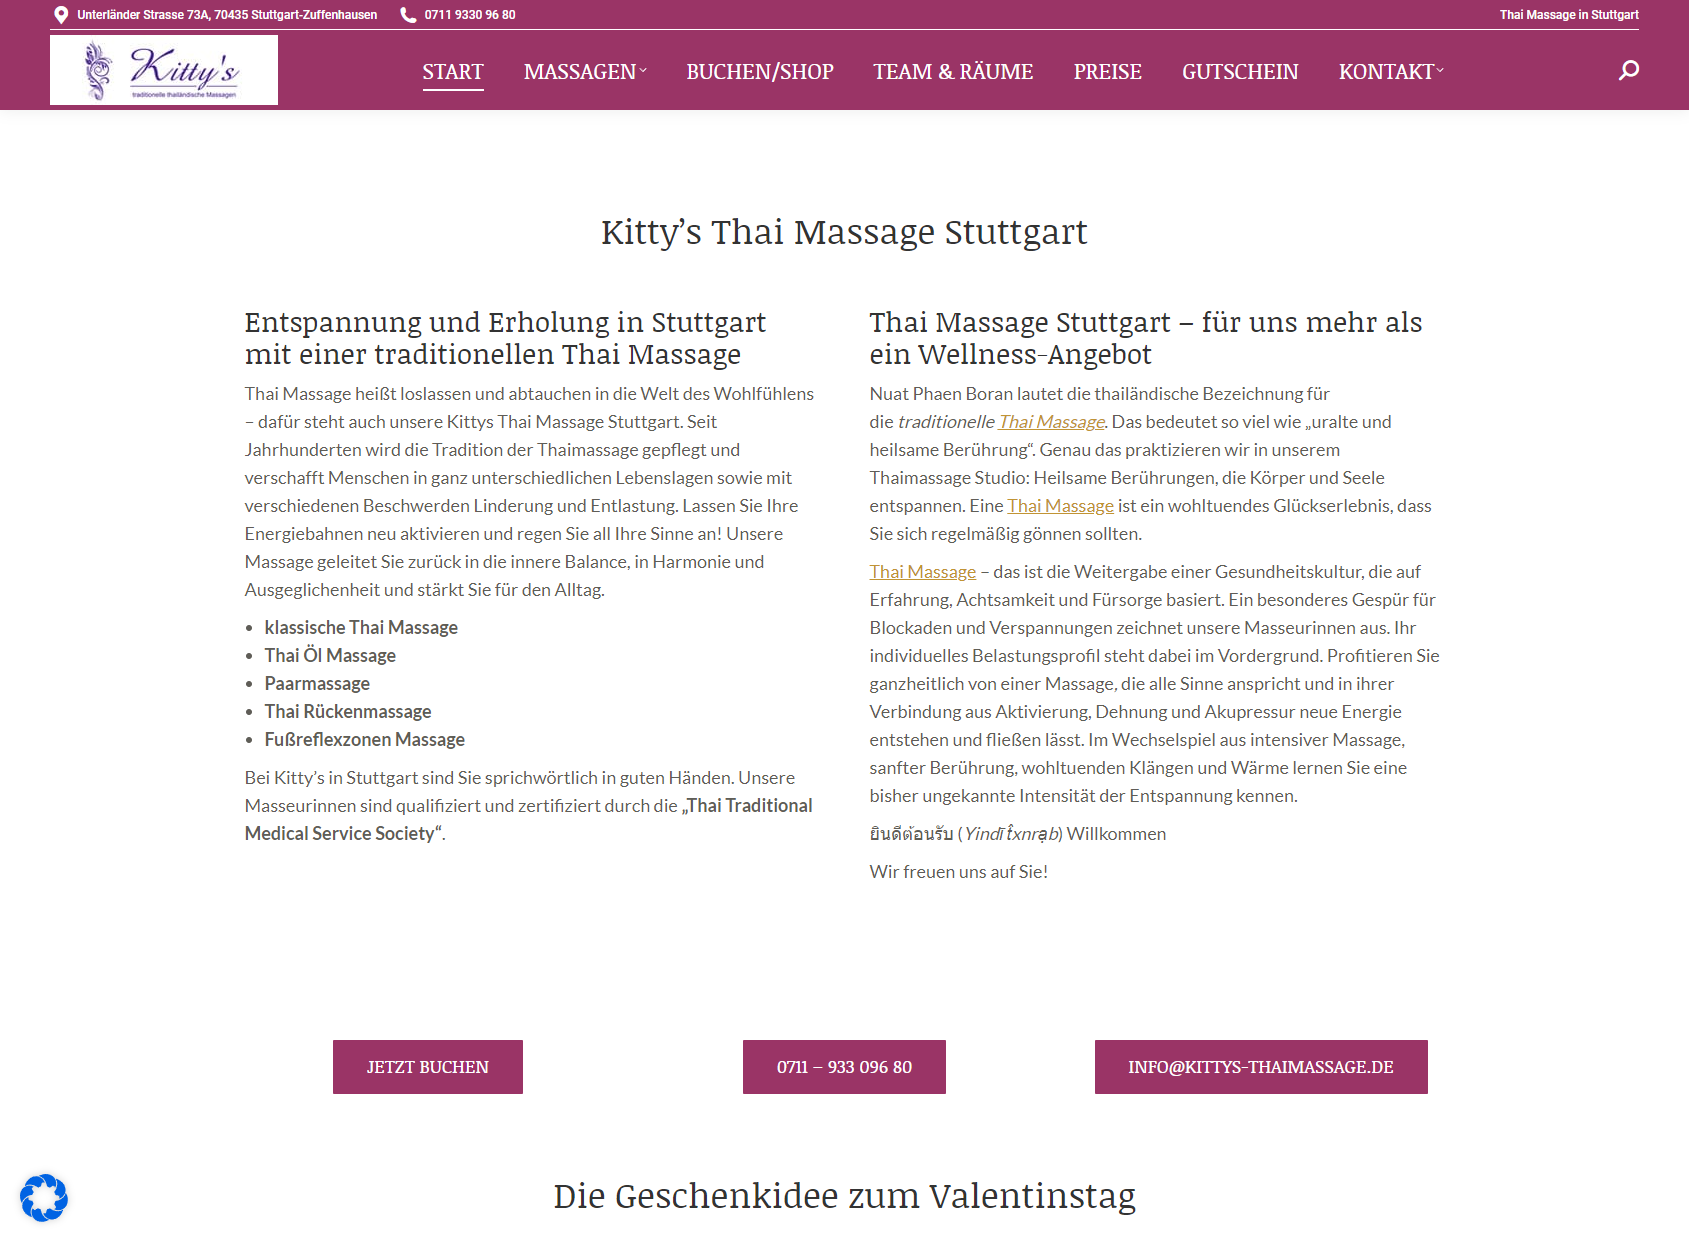 Kitty's Thaimassage Stuttgart